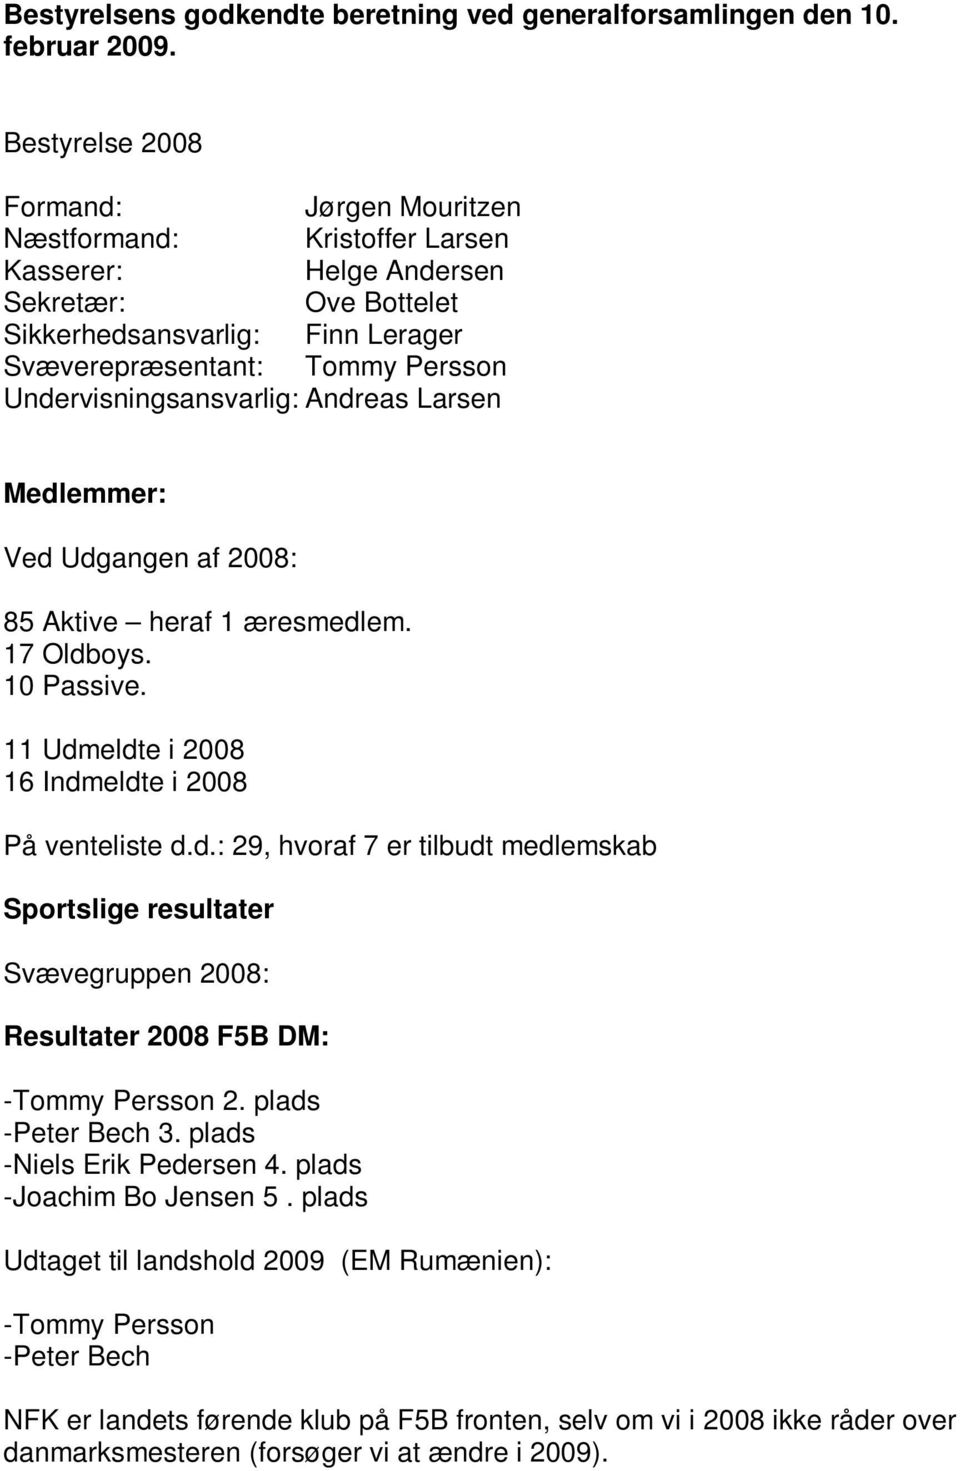 Undervisningsansvarlig: Andreas Larsen Medlemmer: Ved Udgangen af 2008: 85 Aktive heraf 1 æresmedlem. 17 Oldboys. 10 Passive. 11 Udmeldte i 2008 16 Indmeldte i 2008 På venteliste d.d.: 29, hvoraf 7 er tilbudt medlemskab Sportslige resultater Svævegruppen 2008: Resultater 2008 F5B DM: -Tommy Persson 2.